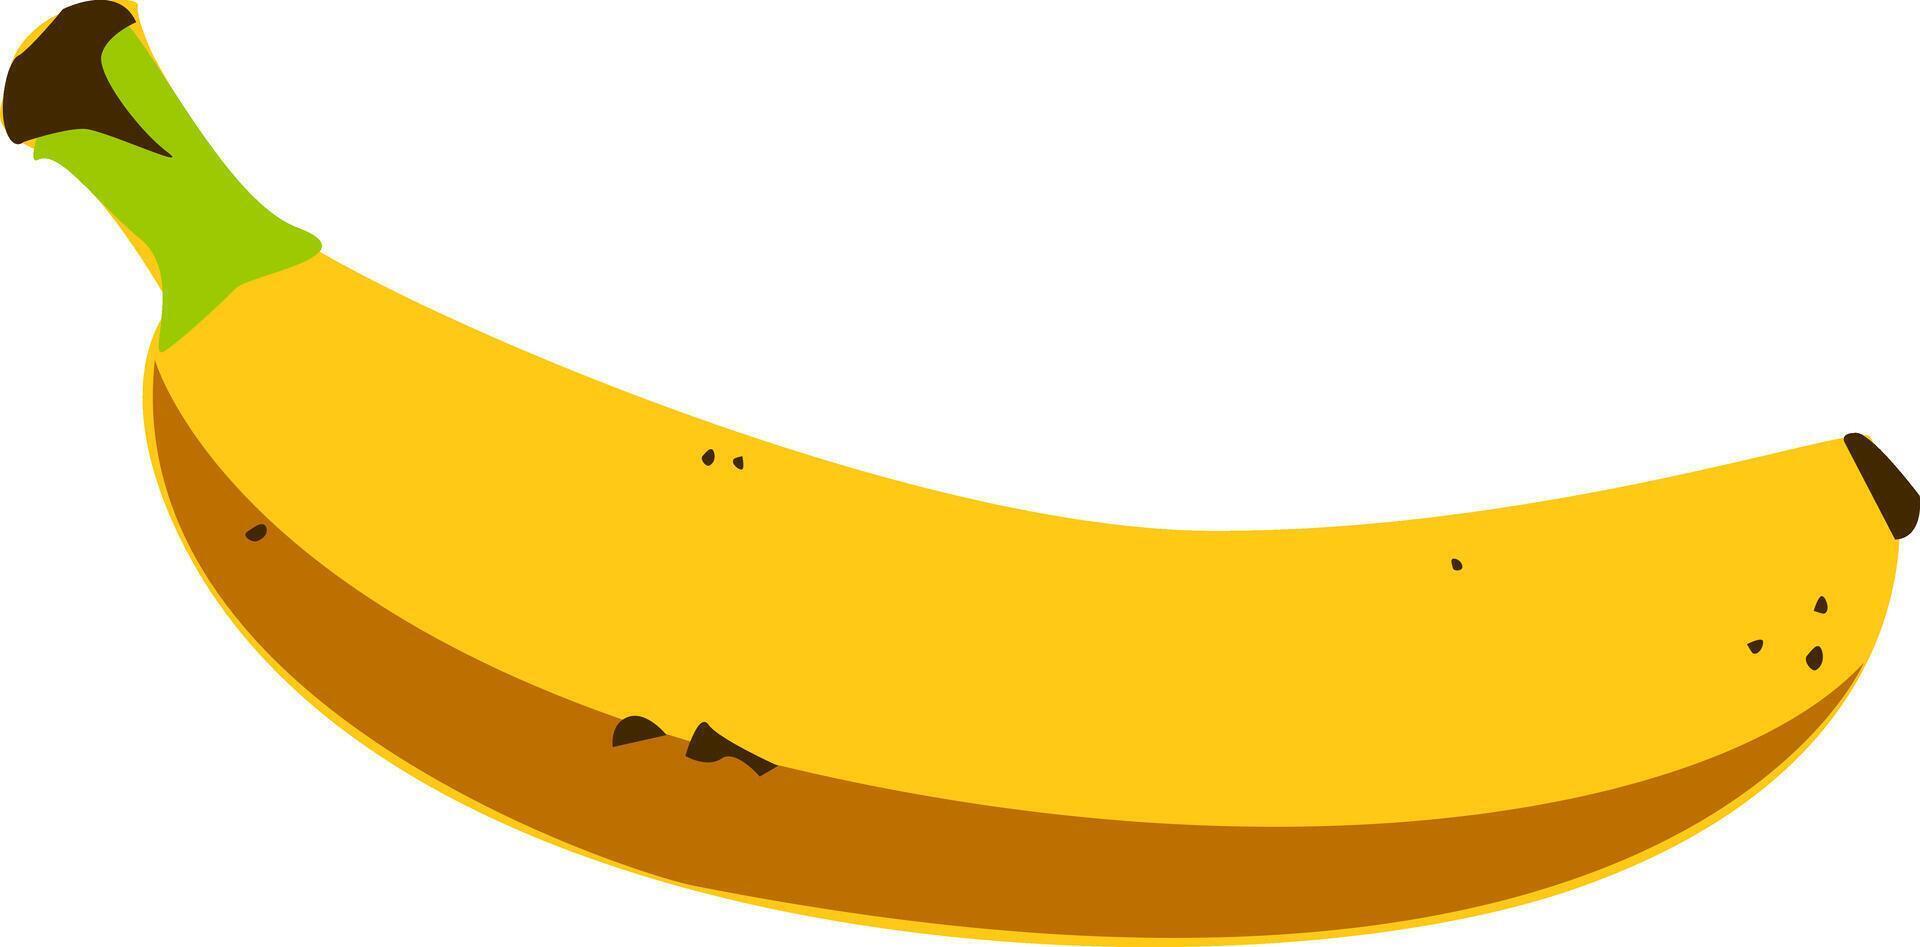 banaan elegantie - een verbijsterend beeld presentatie van de gemakkelijk schoonheid en smakelijk verleiden van een enkelvoud banaan tegen een schoon achtergrond. banaan vector illustratie.